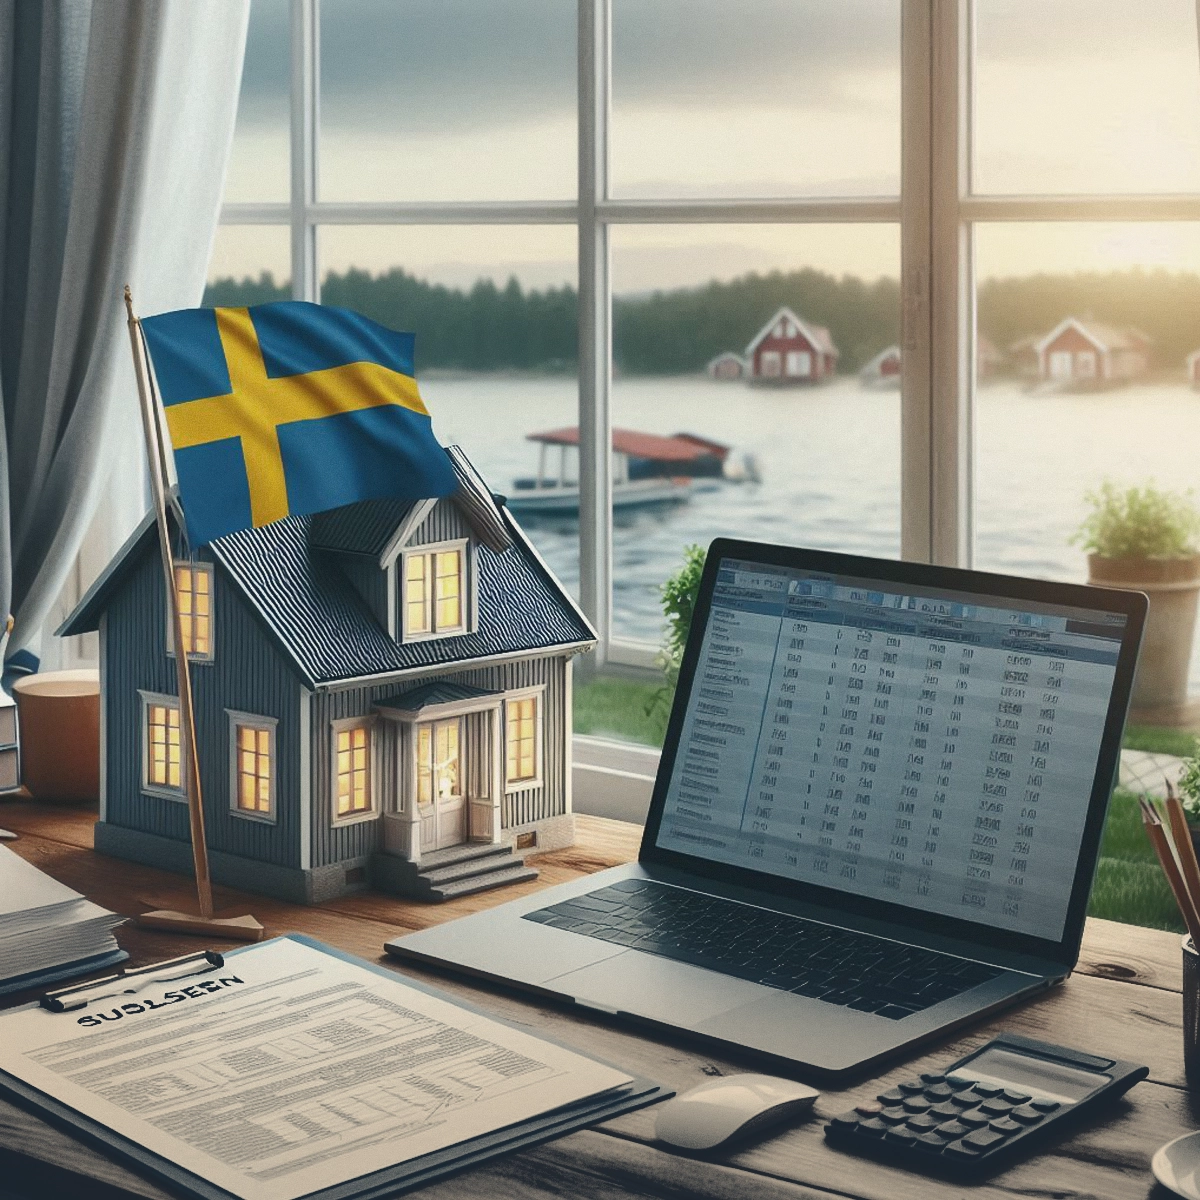 مالیات ملک در سوئد